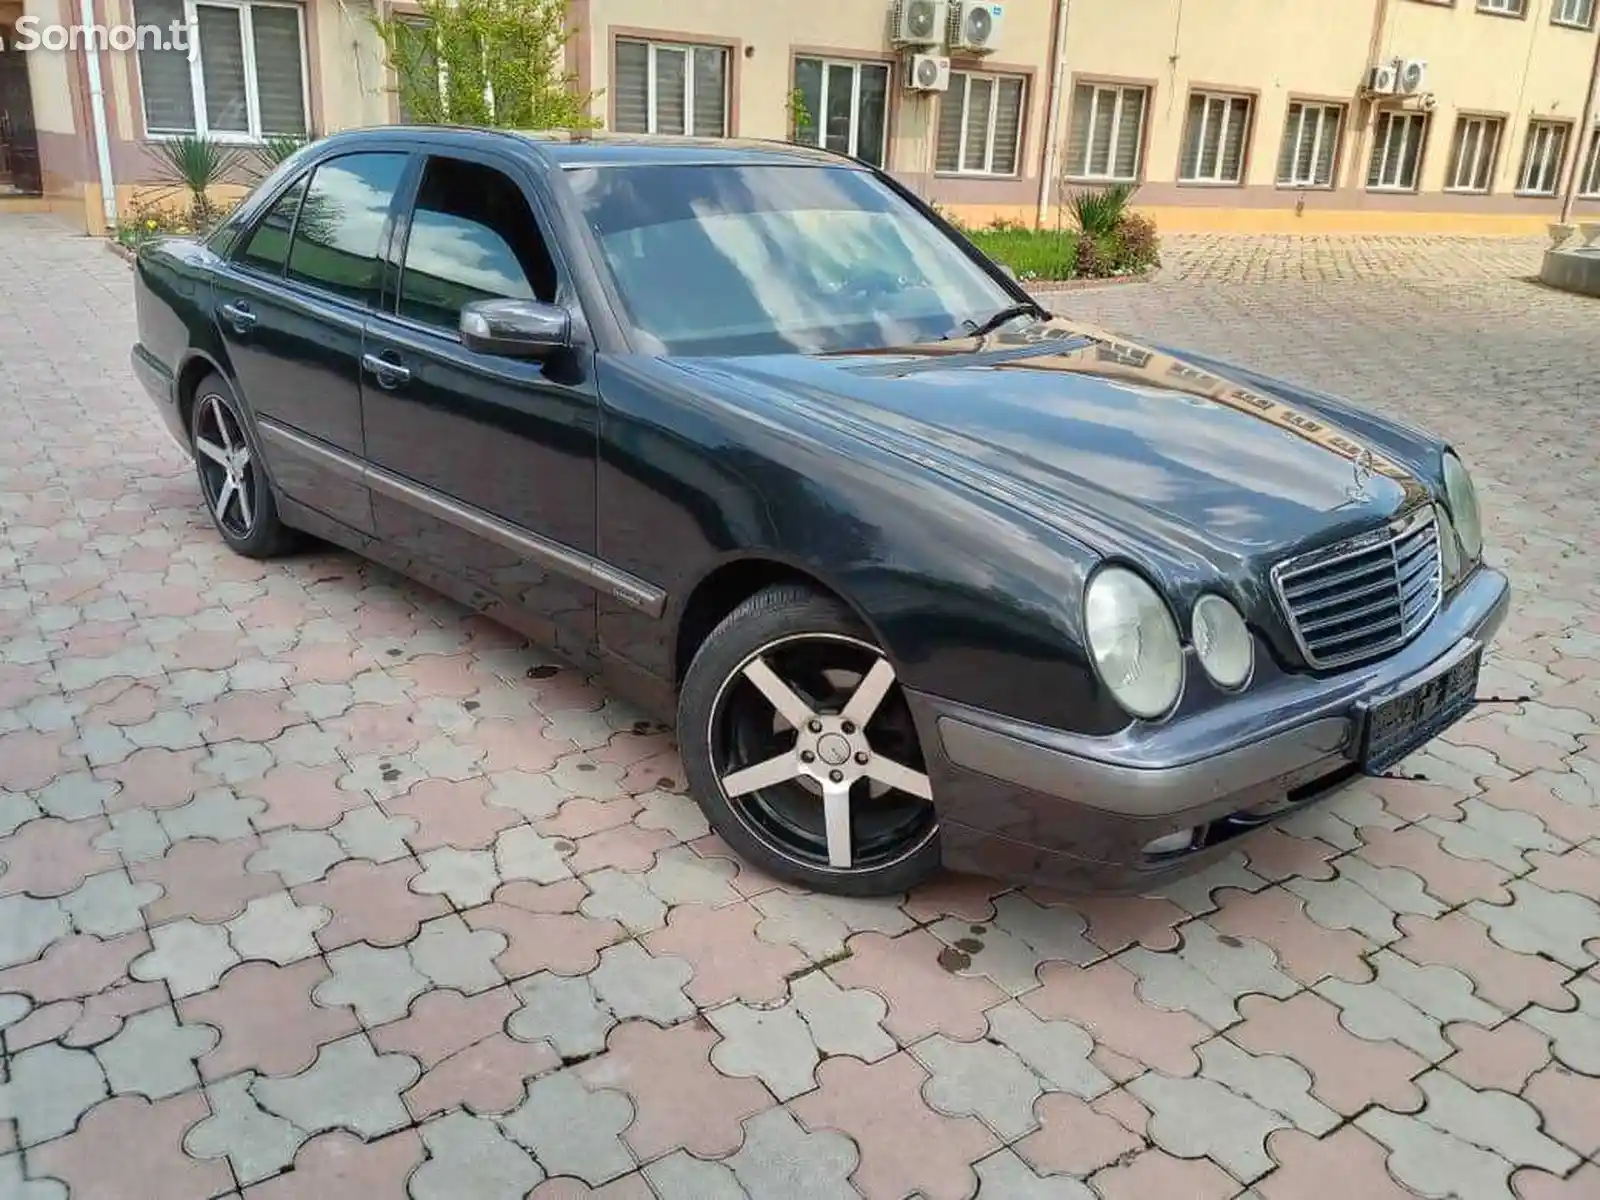 Mercedes-Benz E class, 2000-2